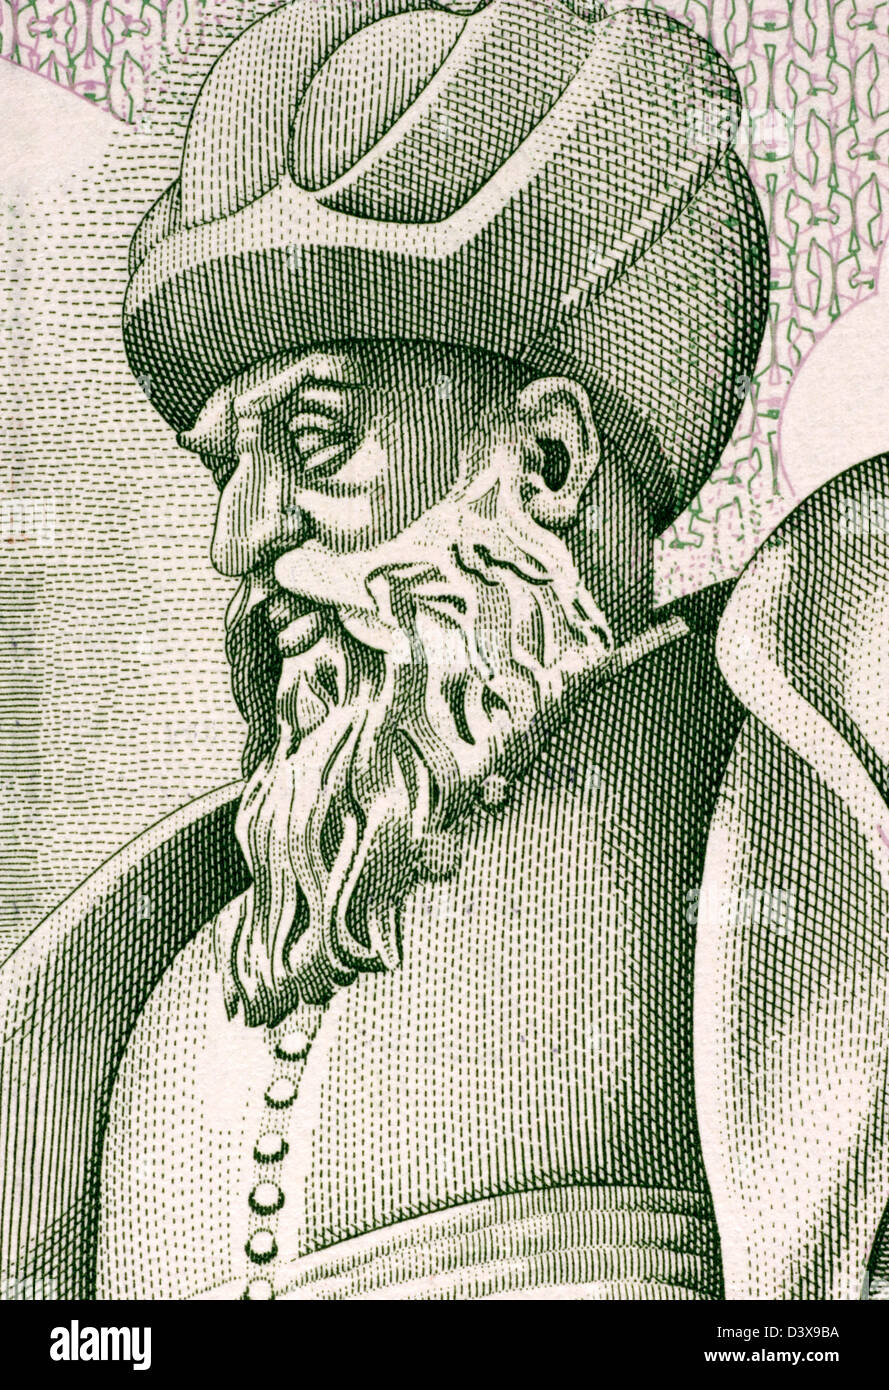 Mimar Sinan (1489-1588) sur le billet de 1989 lires 10000 en provenance de Turquie. Architecte Ottoman et ingénieur civil. Banque D'Images